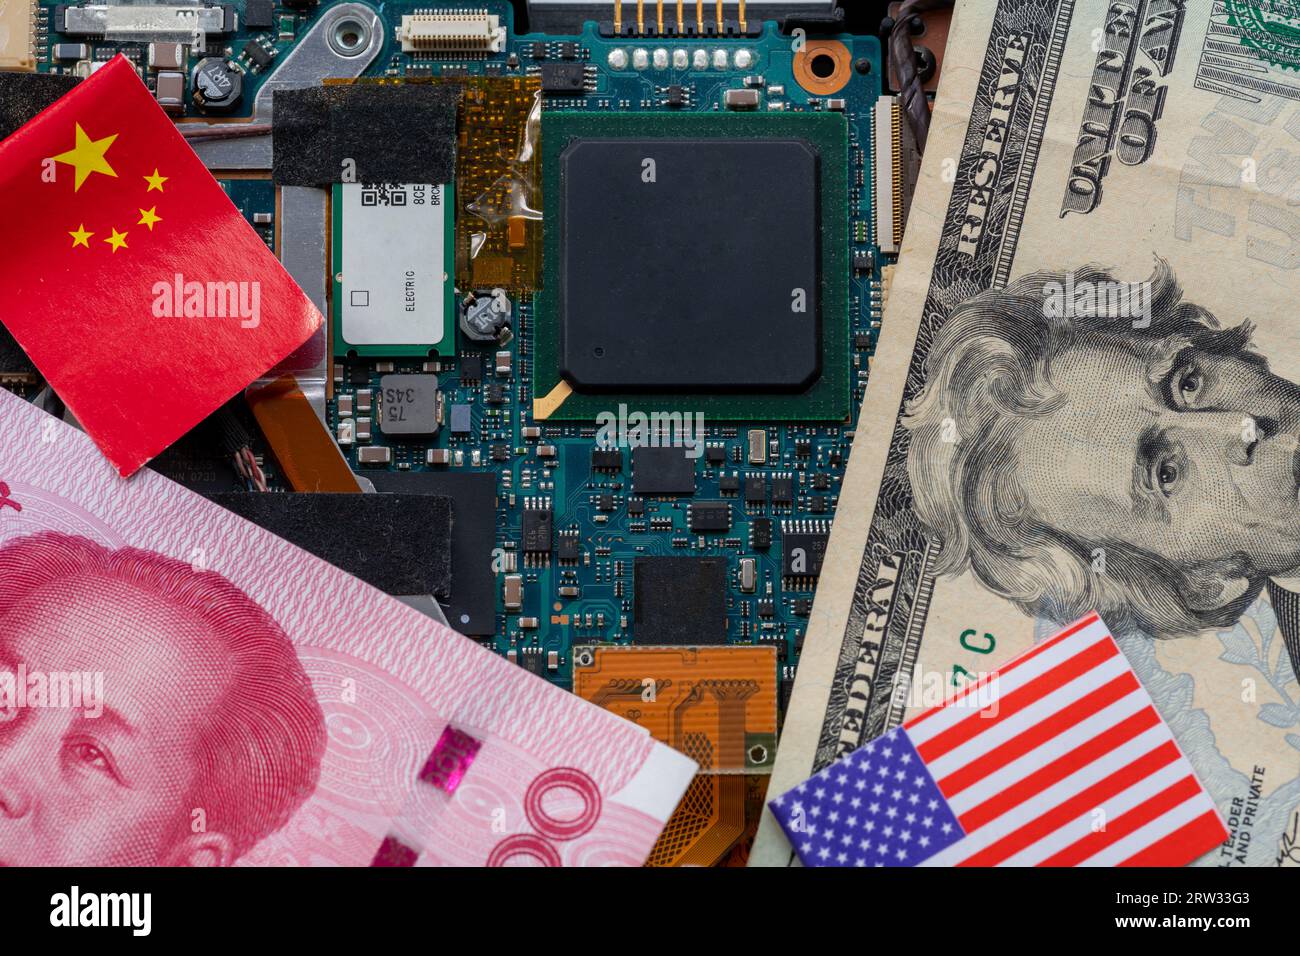 Un conflicto de tecnología, concepto de competencia con las banderas estadounidenses y chinas en la parte superior de una placa de circuito de semiconductores. Foto de stock